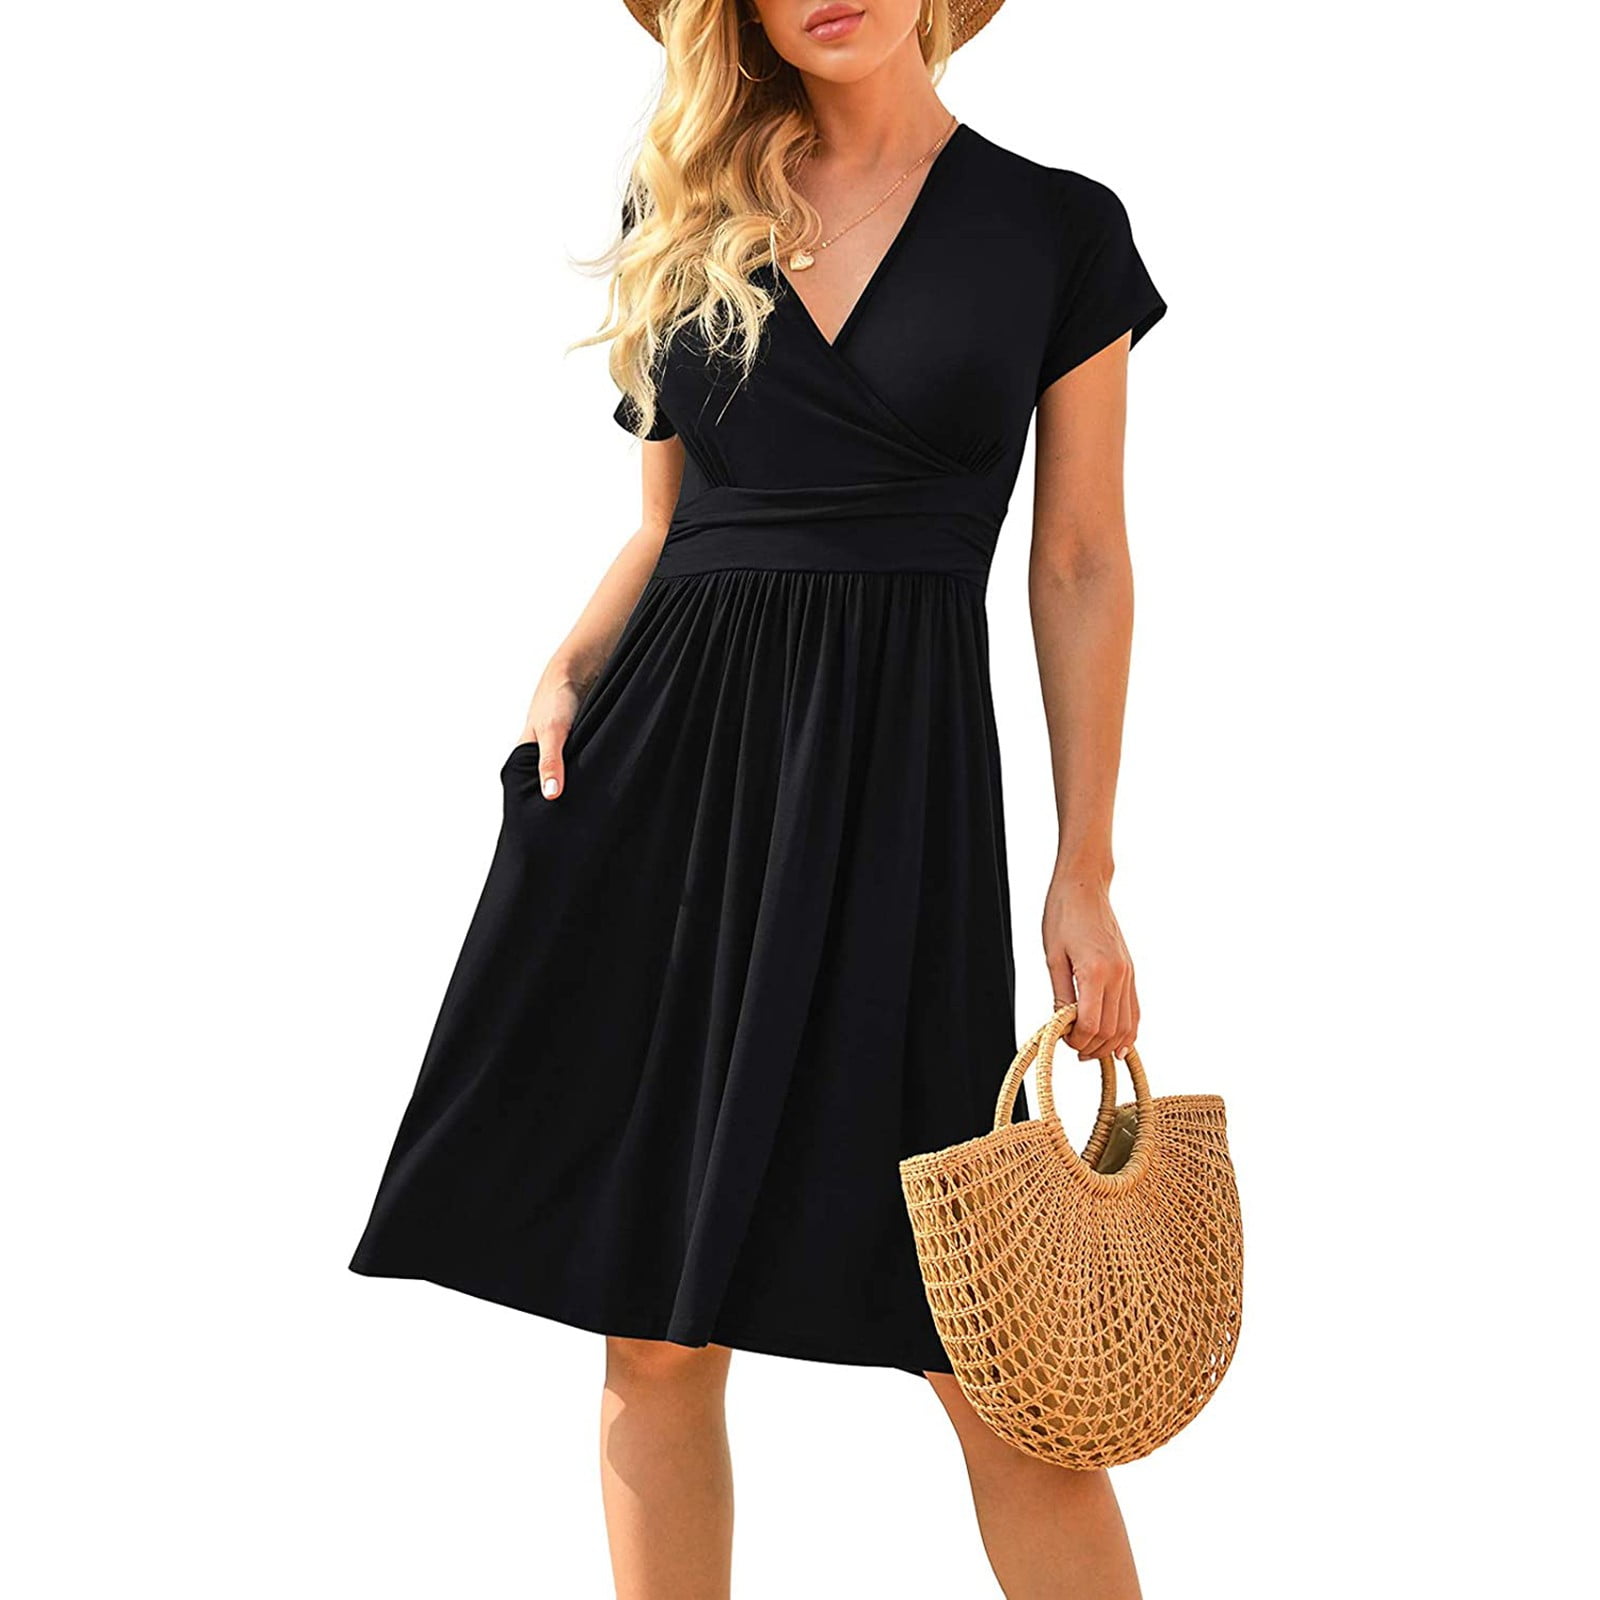 Little Black Dress for Women Home Casual Solid Slim Comfy V-Neck Short ...